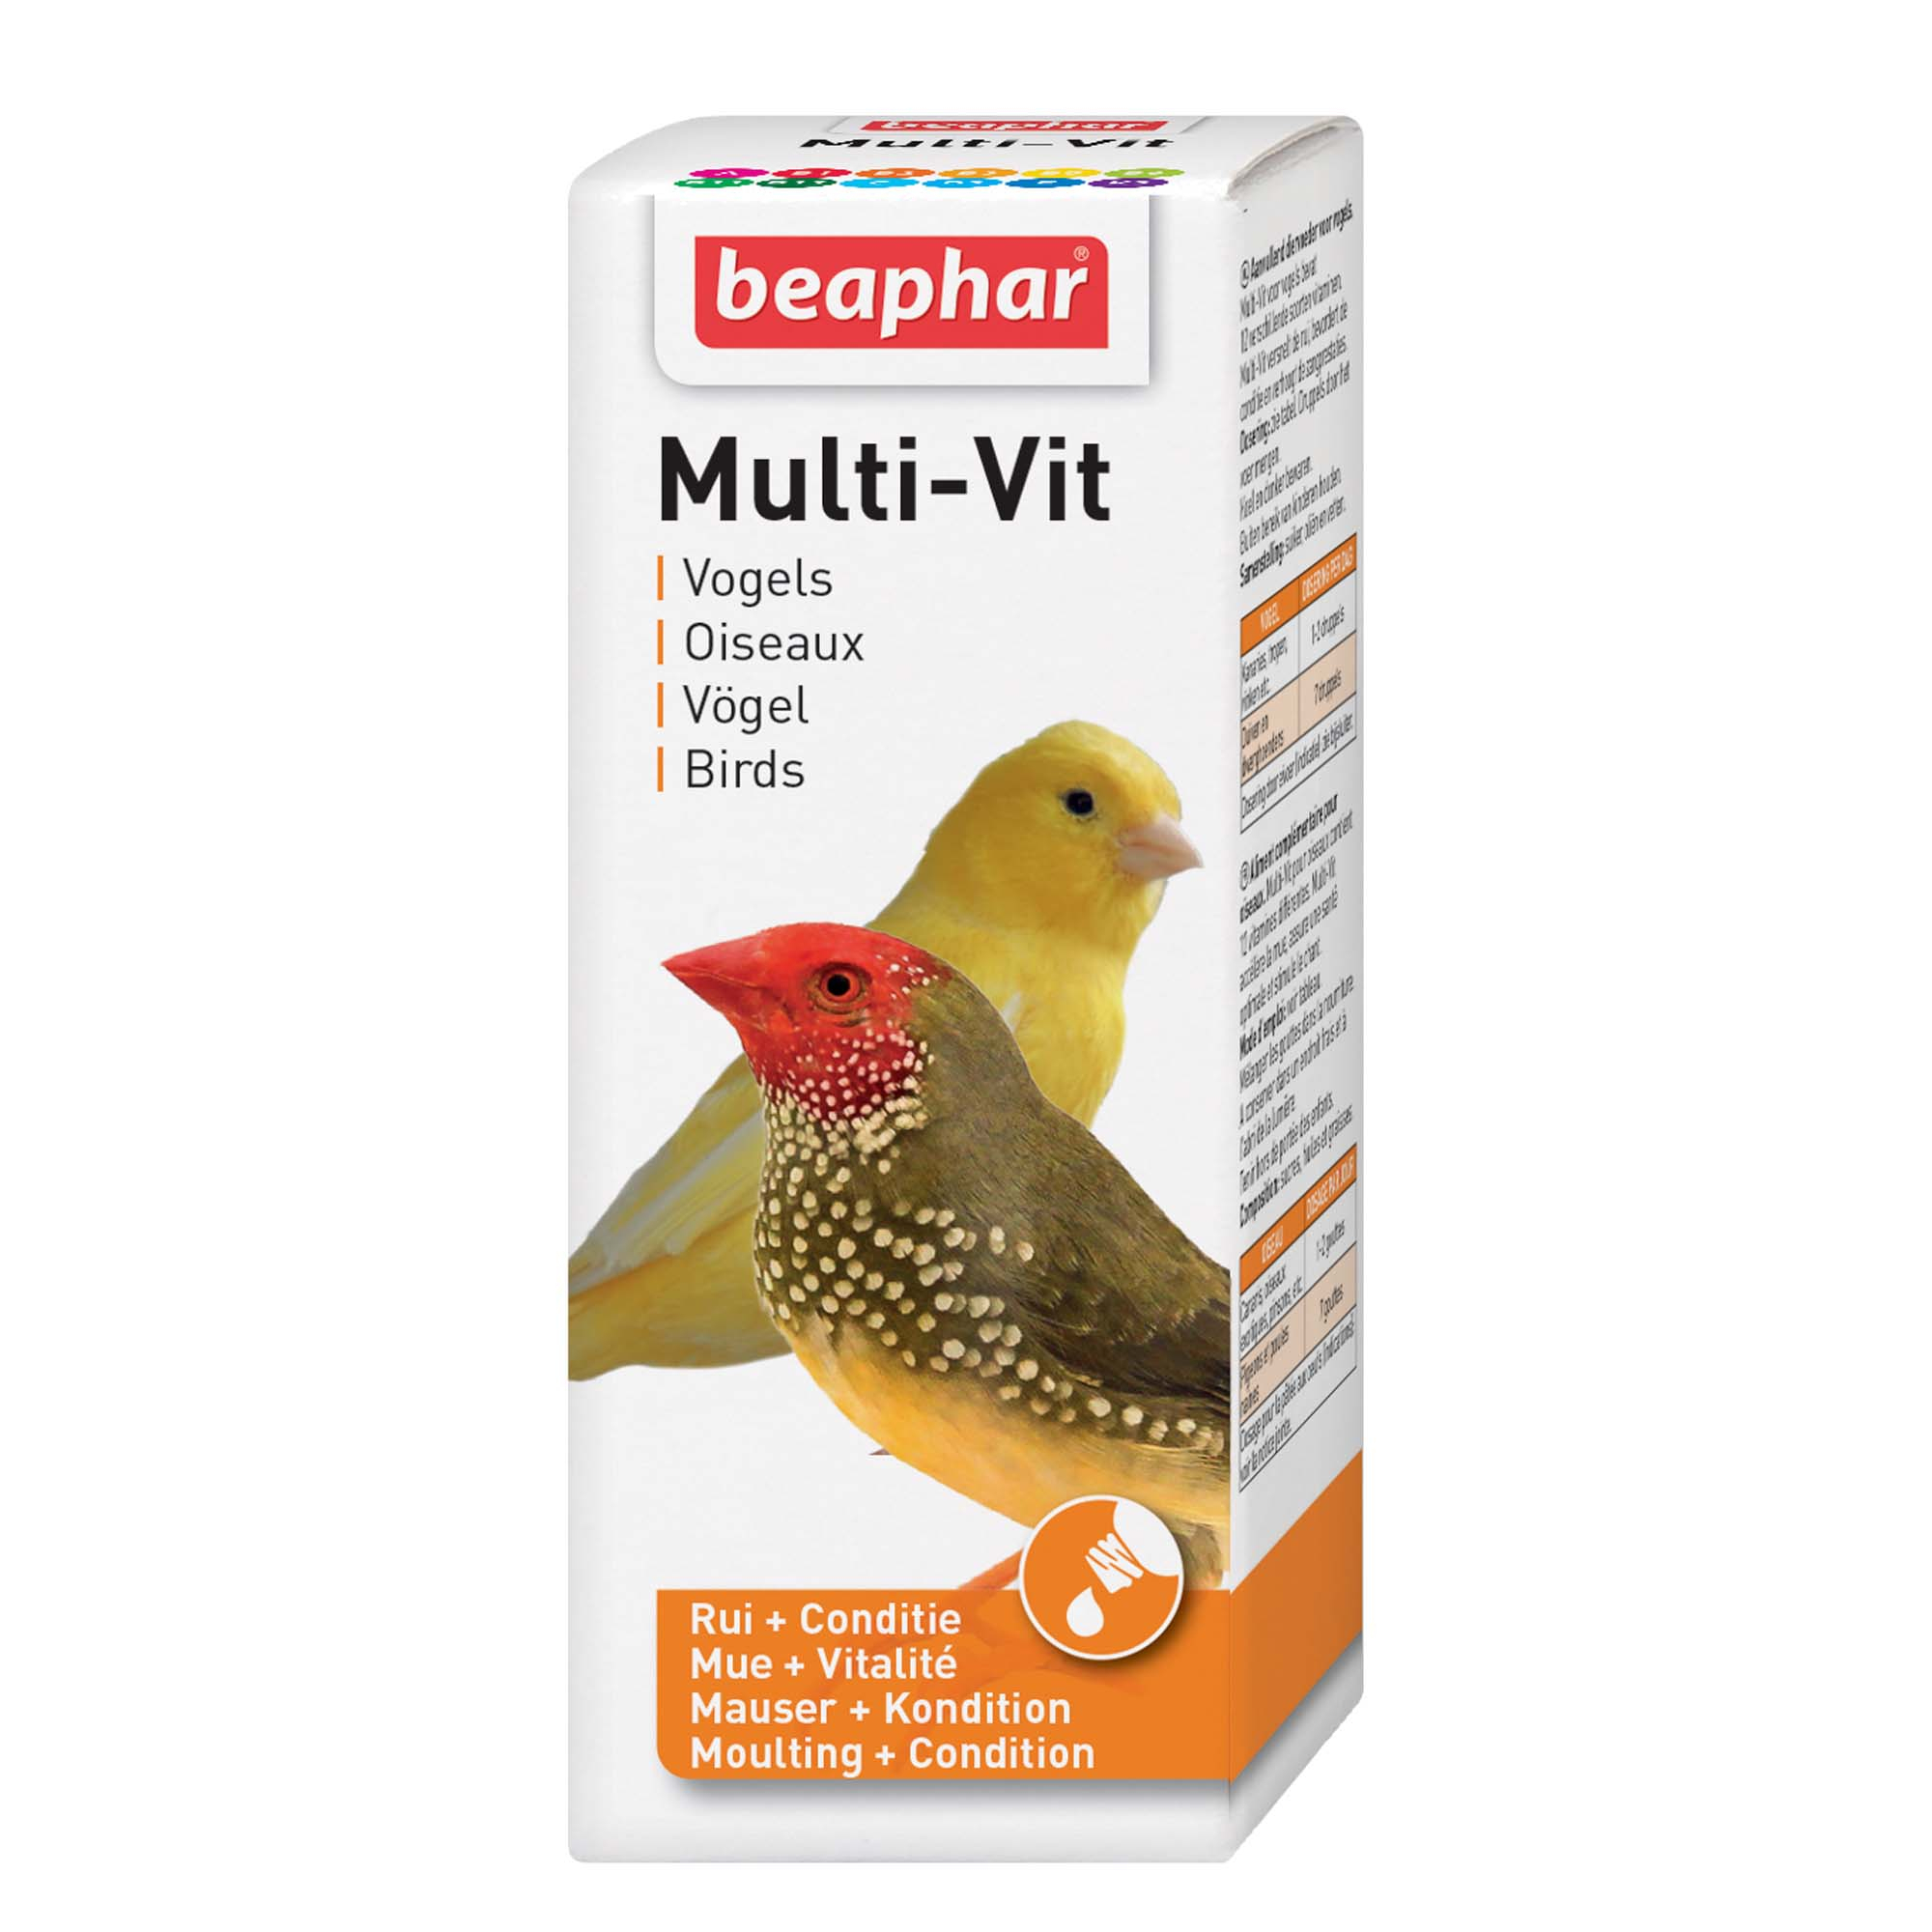 Multi-vit, vitaminas para pájaros